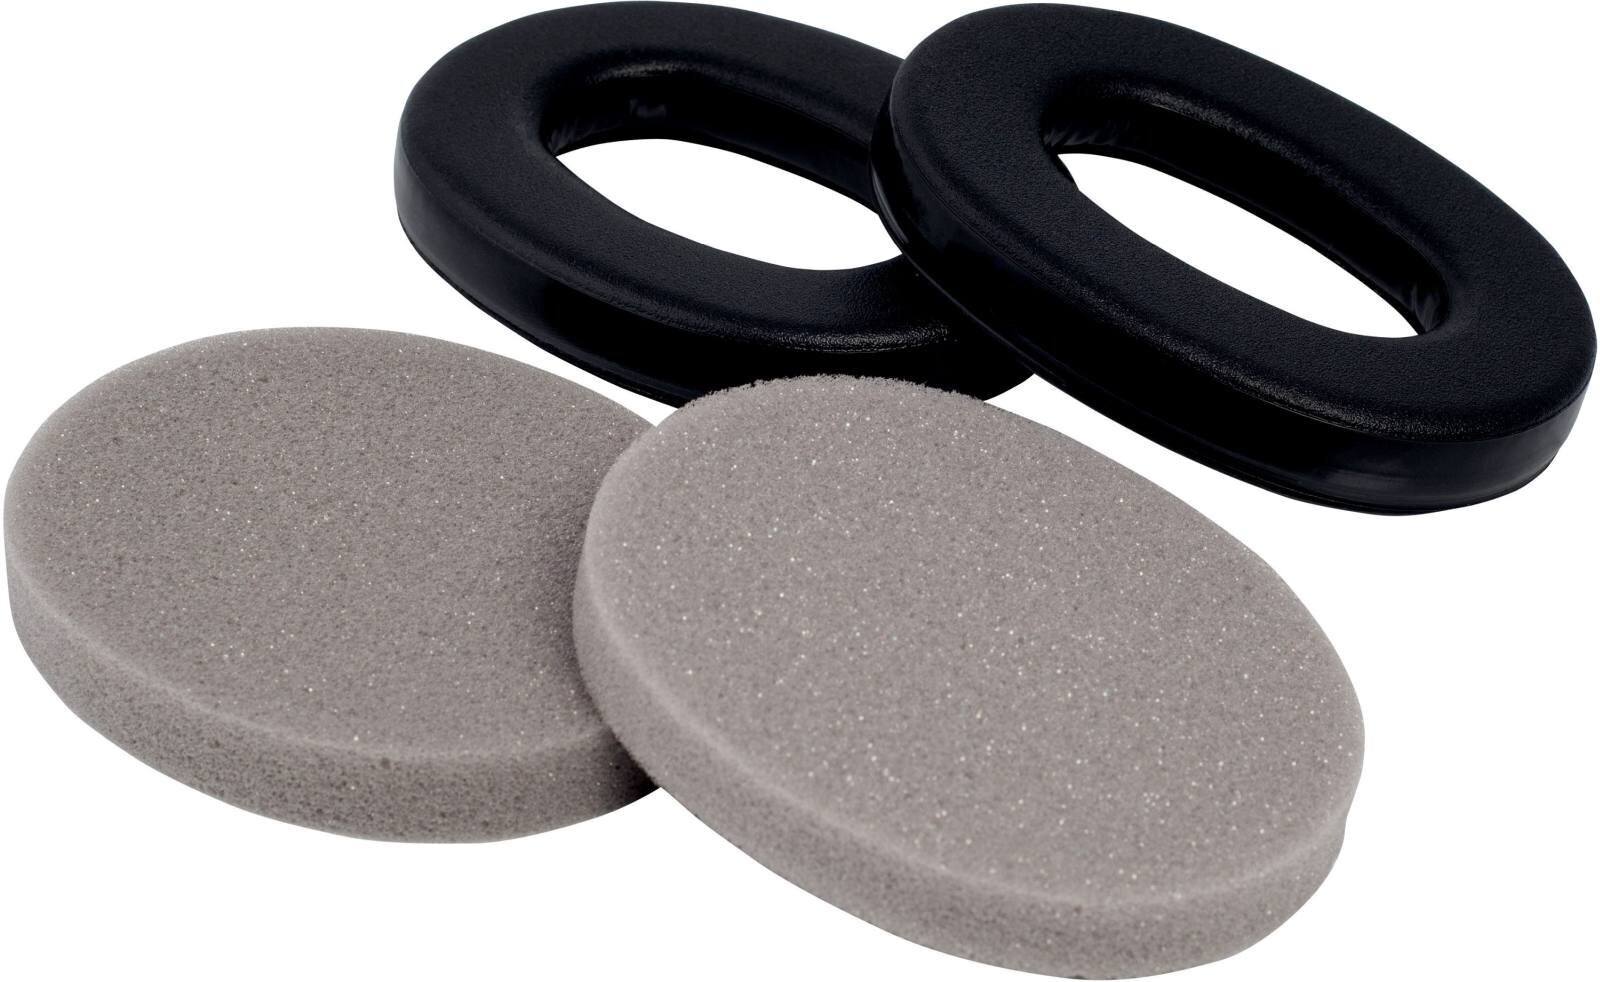 3M HYX1 set de higiene para orejeras X1, contenido: 2 almohadillas de espuma y 2 anillos de sellado